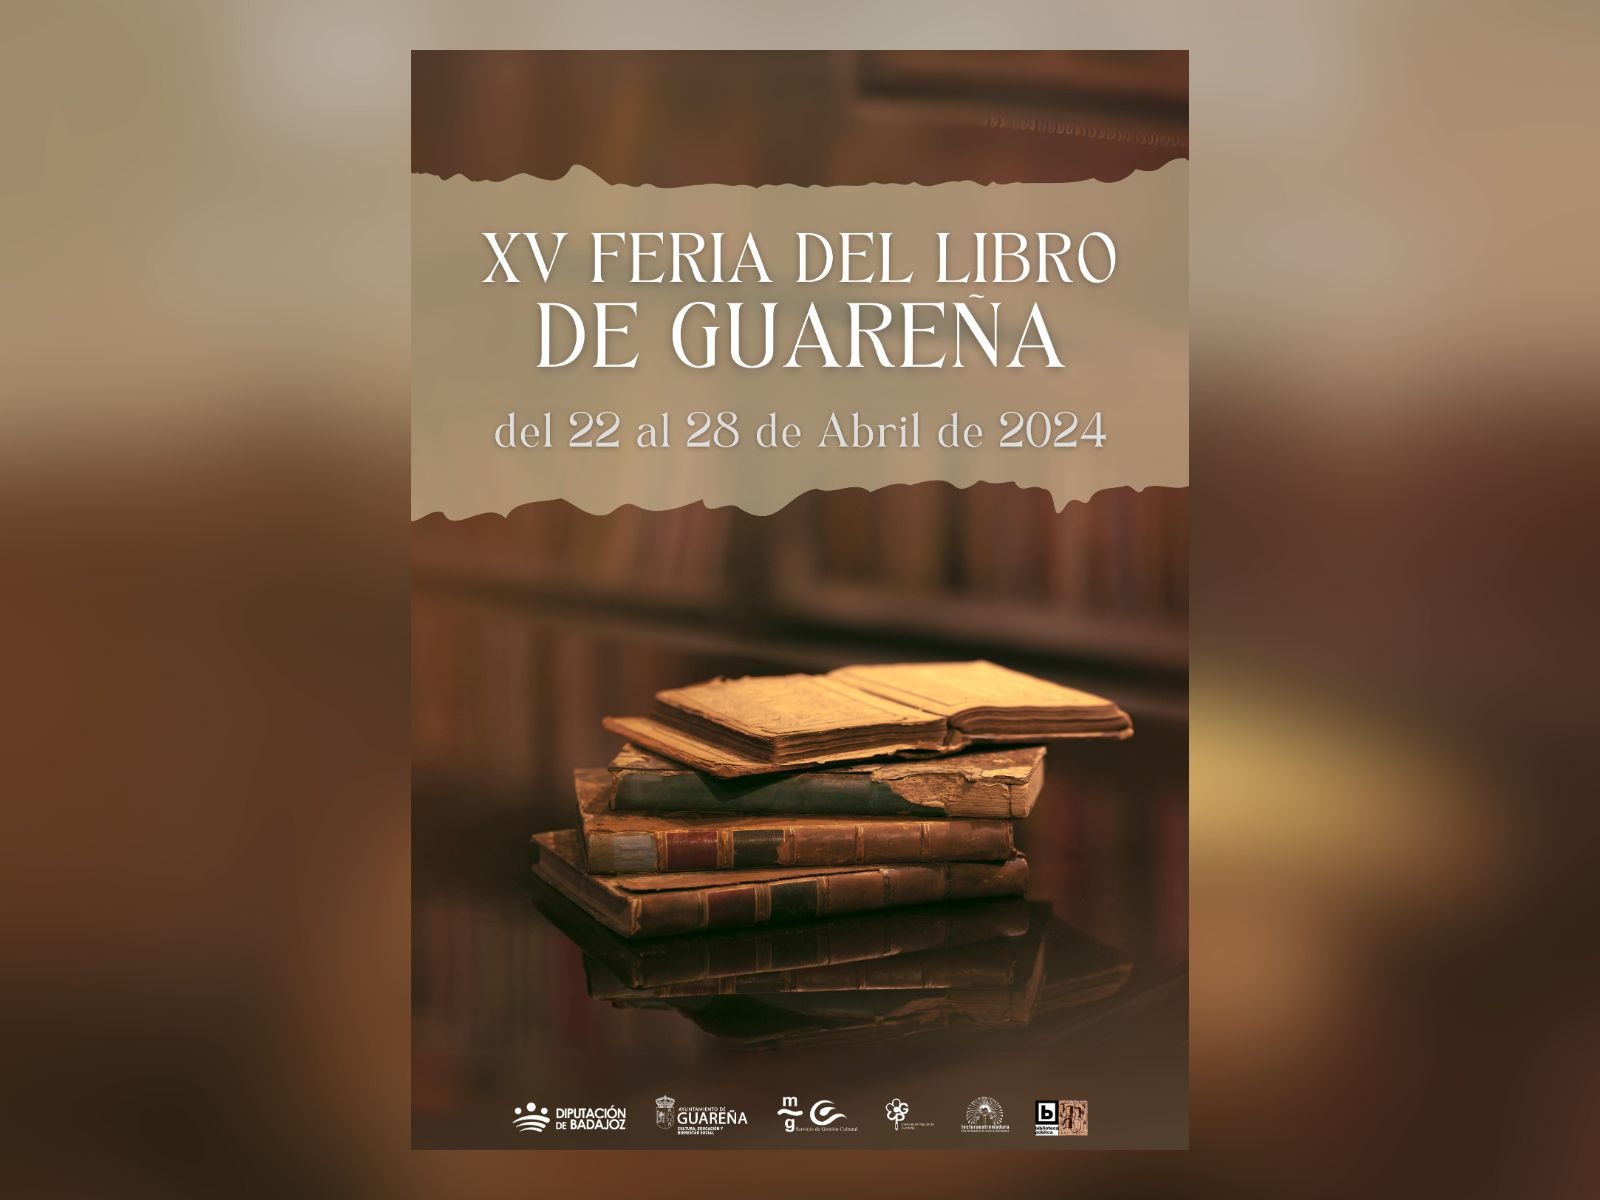 Arranca la programación de actividades de la Feria del Libro 2024 en Guareña